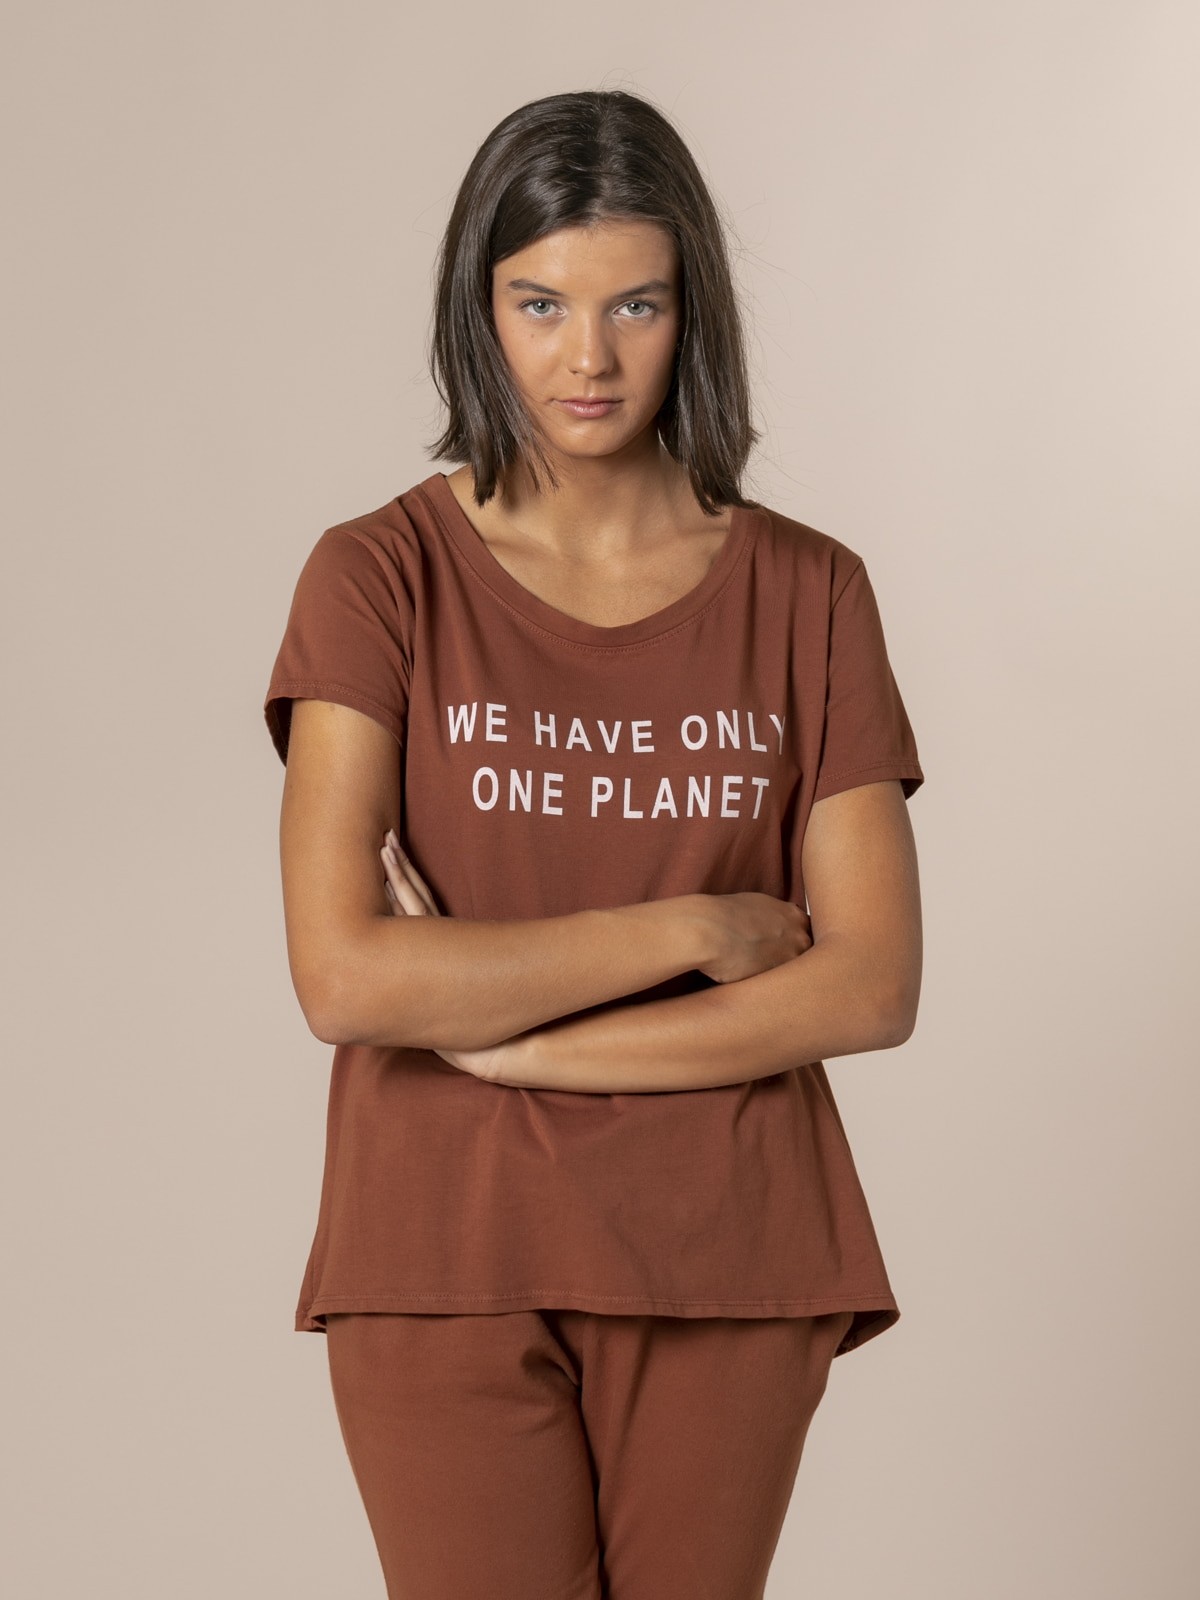 Camiseta mujer mensaje ecofriendly Teja